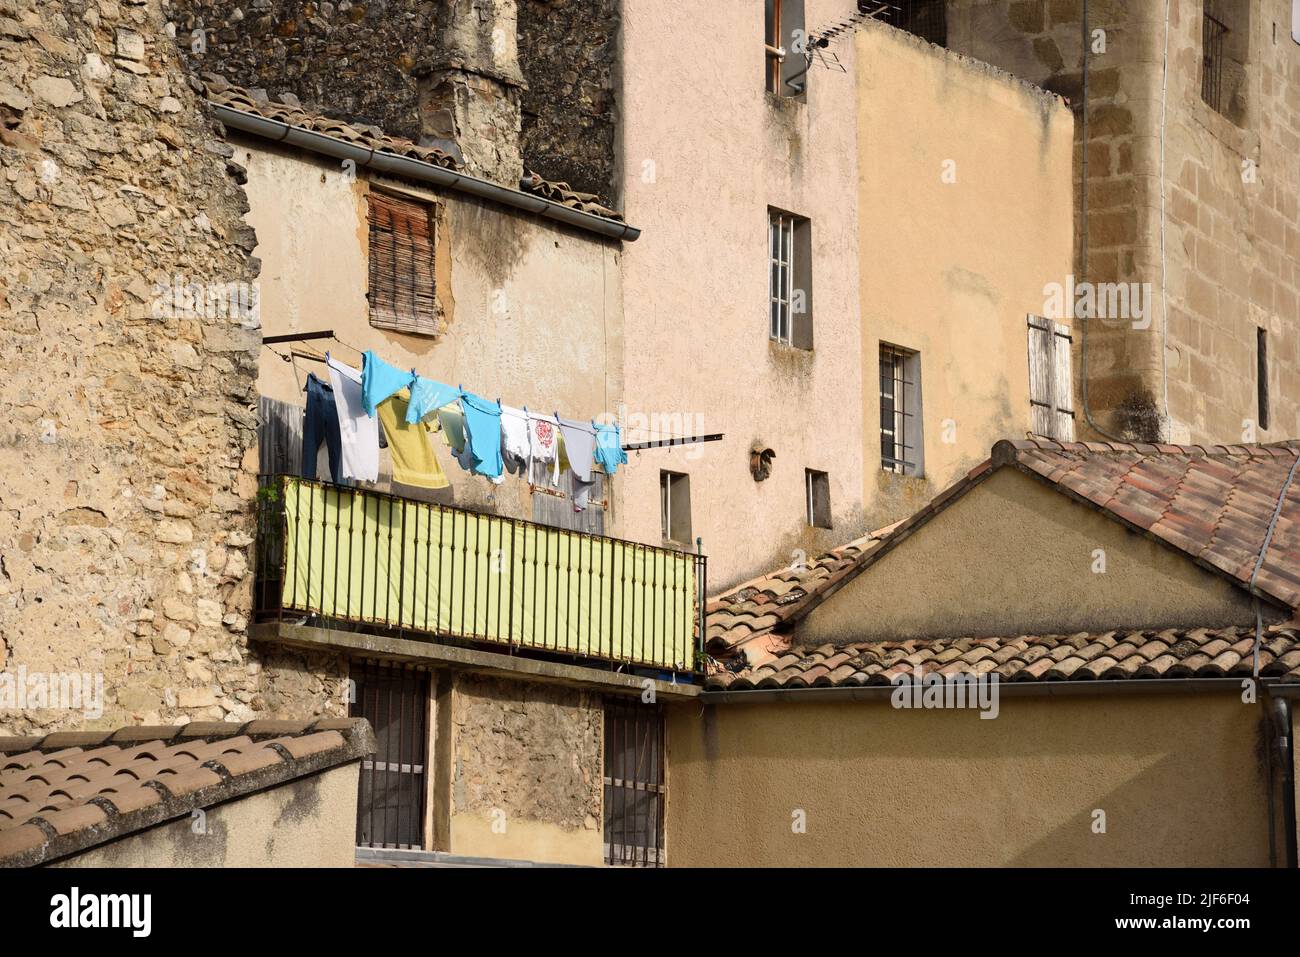 Lavandería o Lavado Secado en la línea de lavado o línea de ropa en el balcón en el casco antiguo o distrito histórico Nyons Drôme Provence Francia Foto de stock